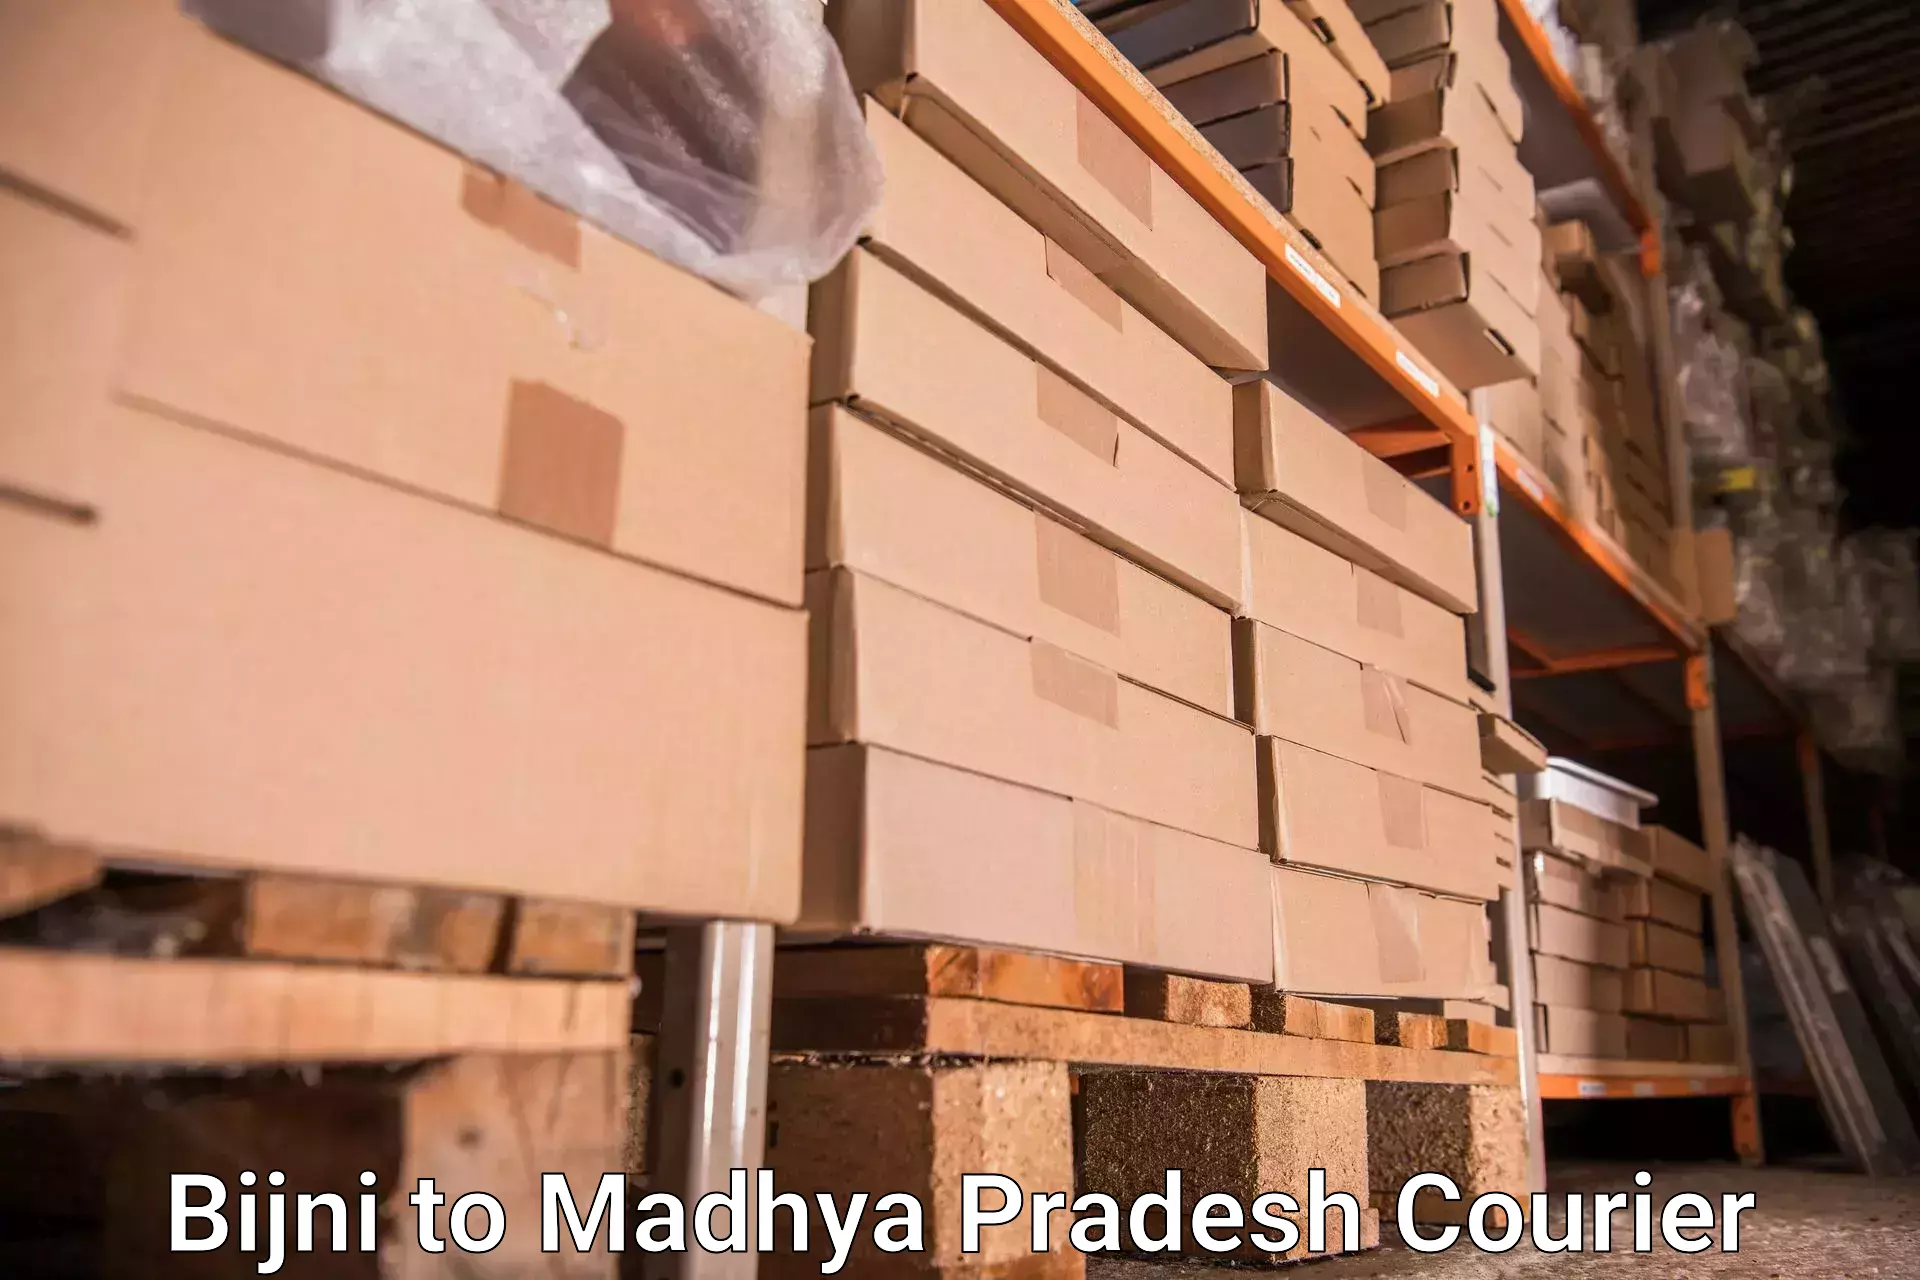 Baggage shipping quotes Bijni to Madhya Pradesh